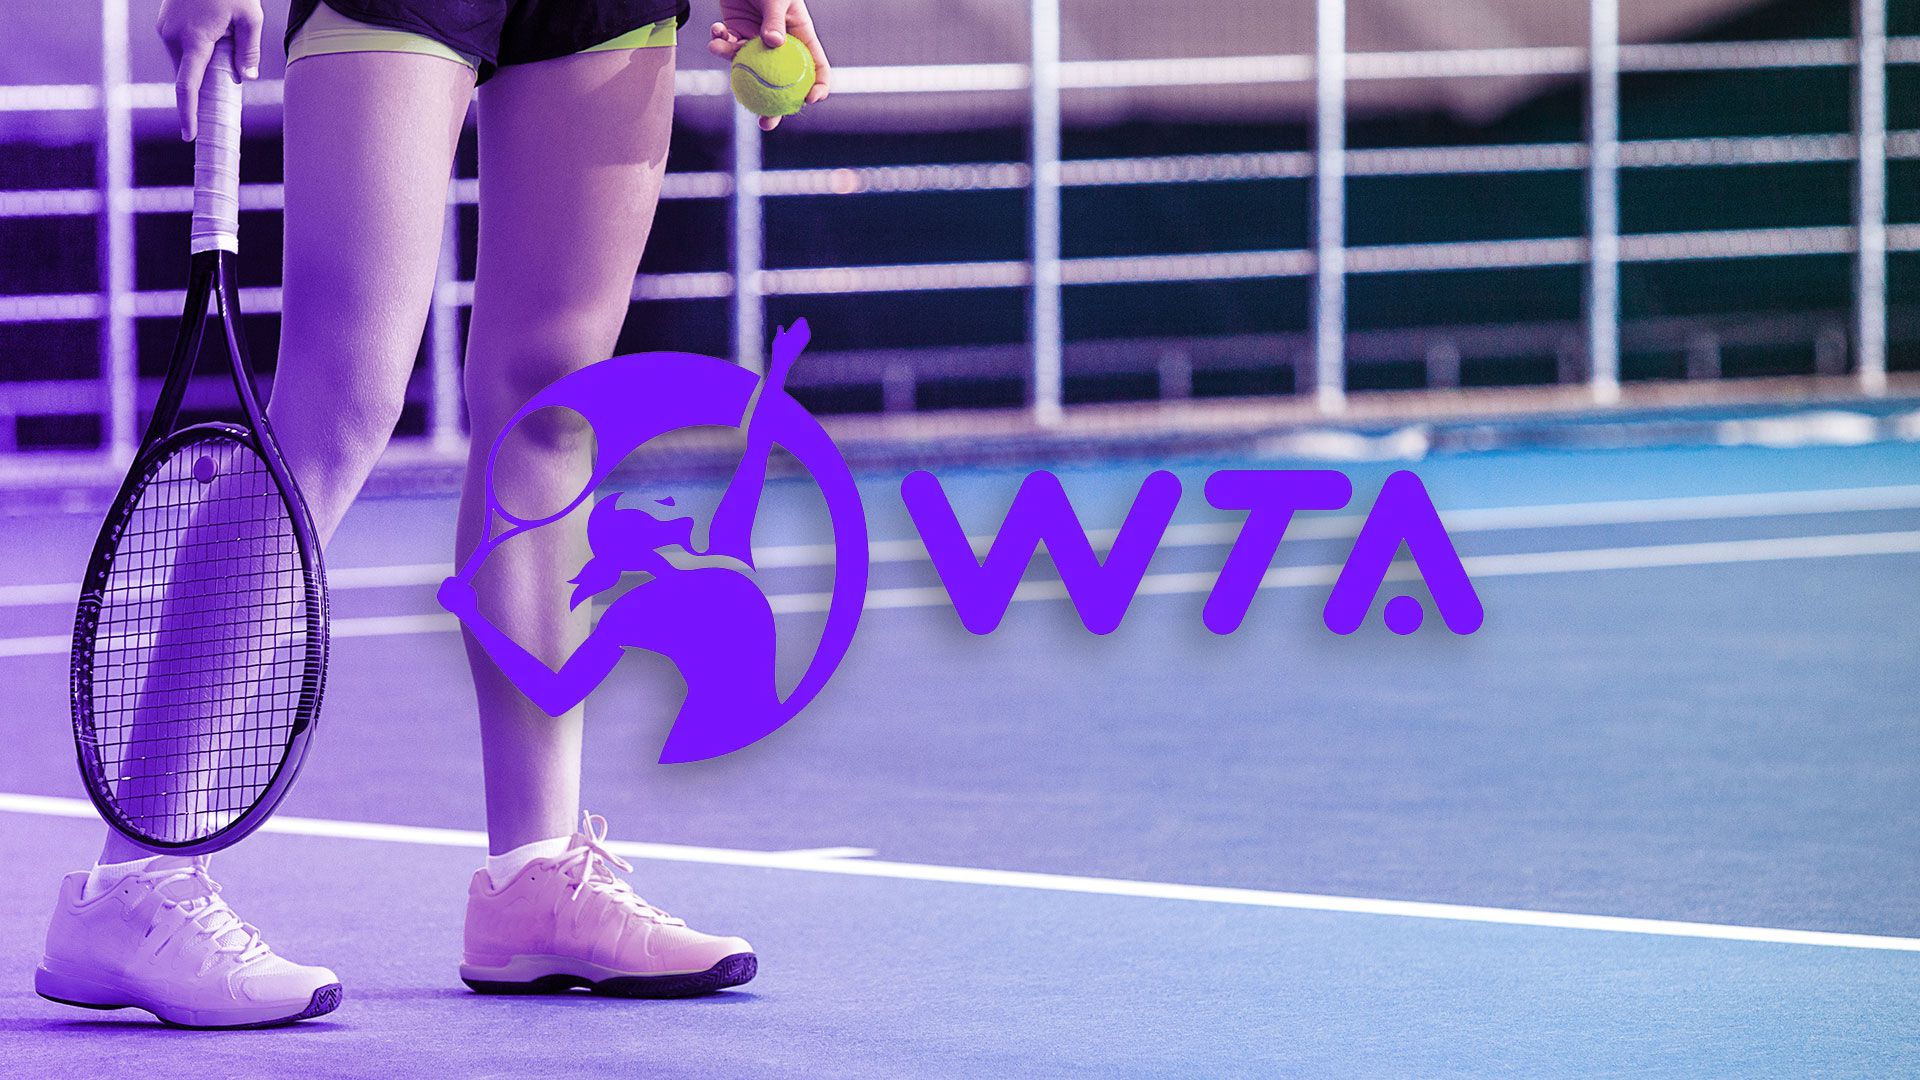 La WTA fue creada en 1973 por la tenista estadounidense Billie Jean King. (Infobae)